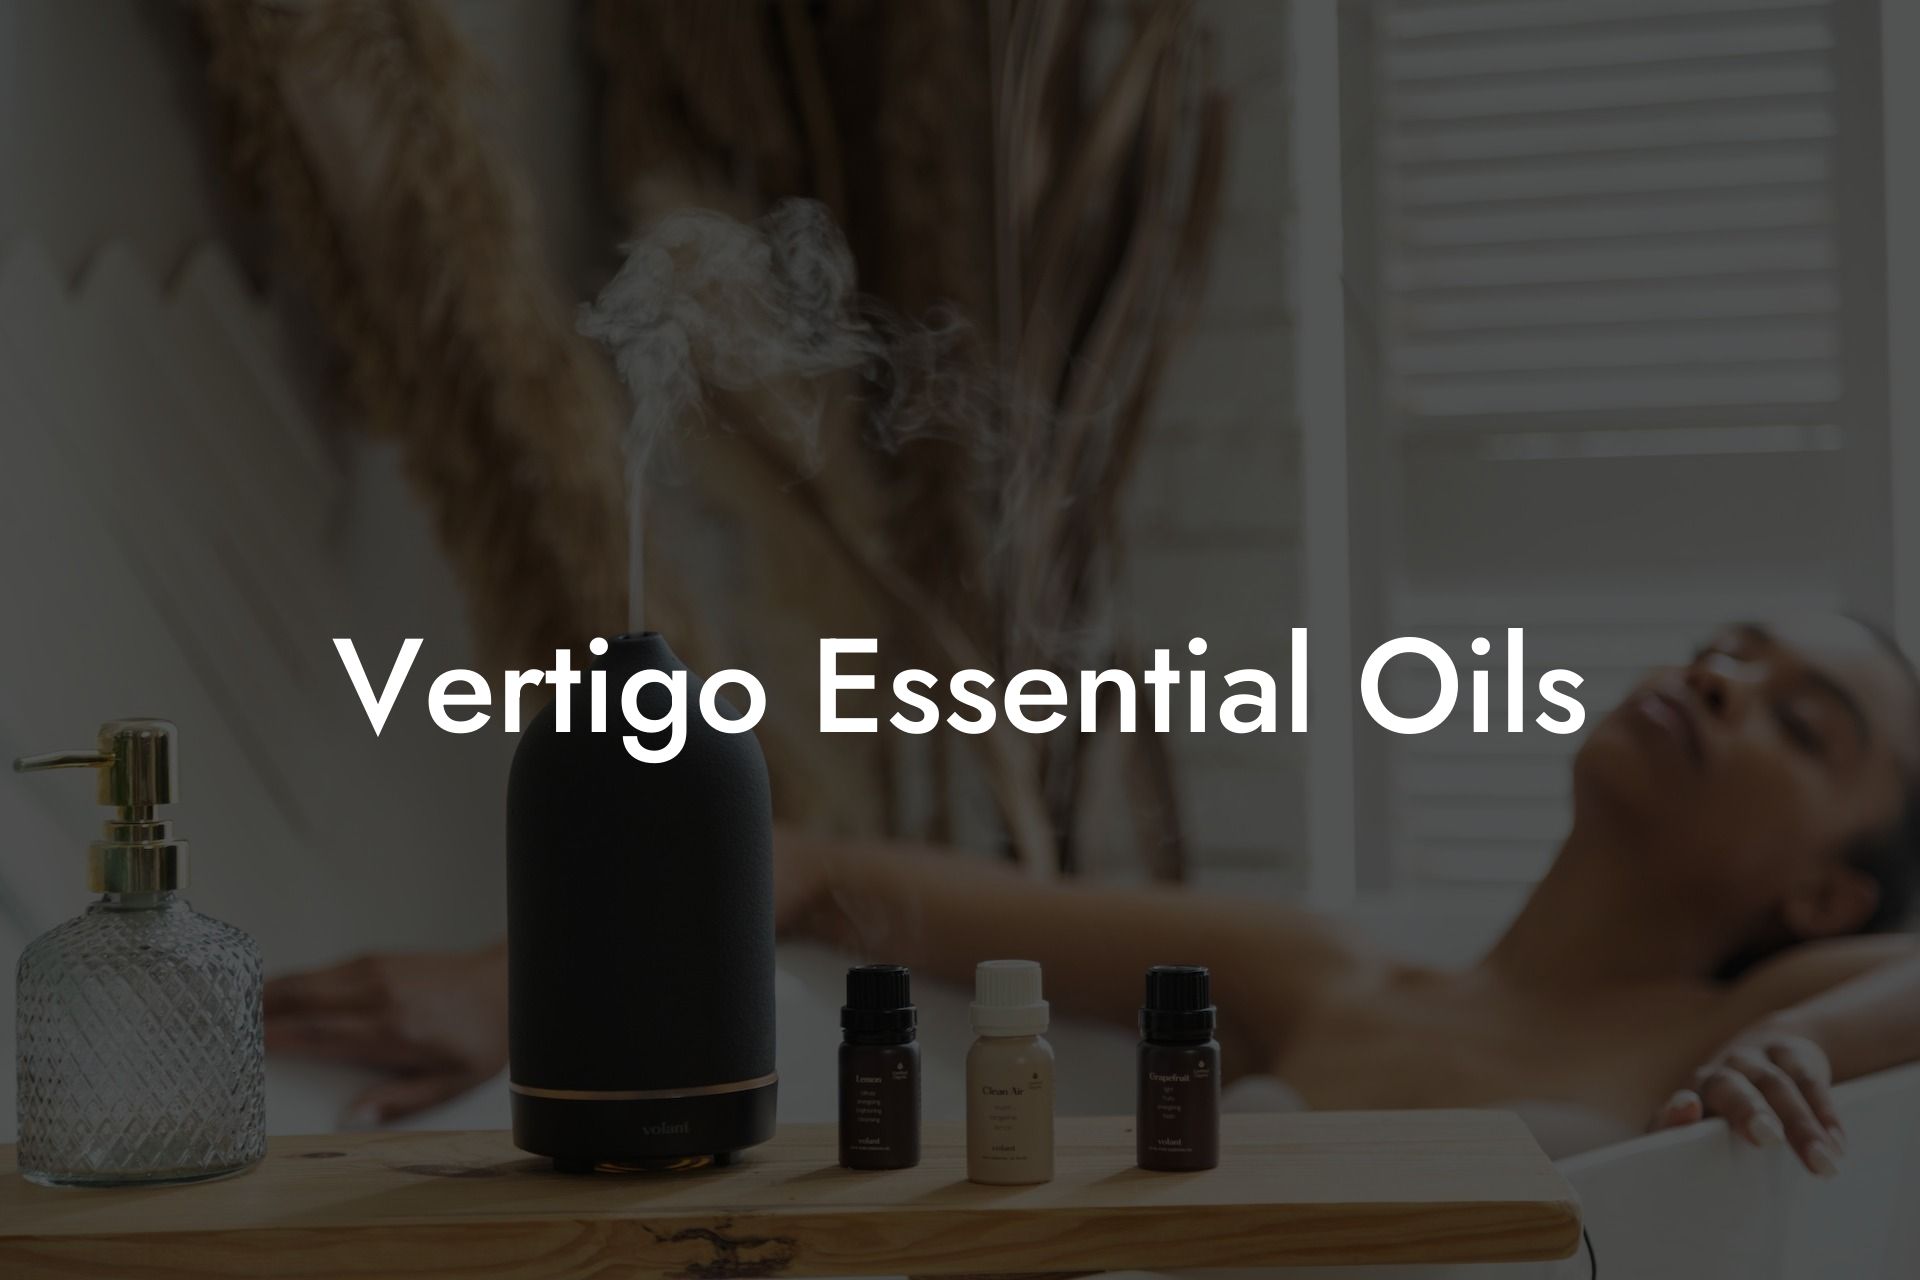 Vertigo Essential Oils